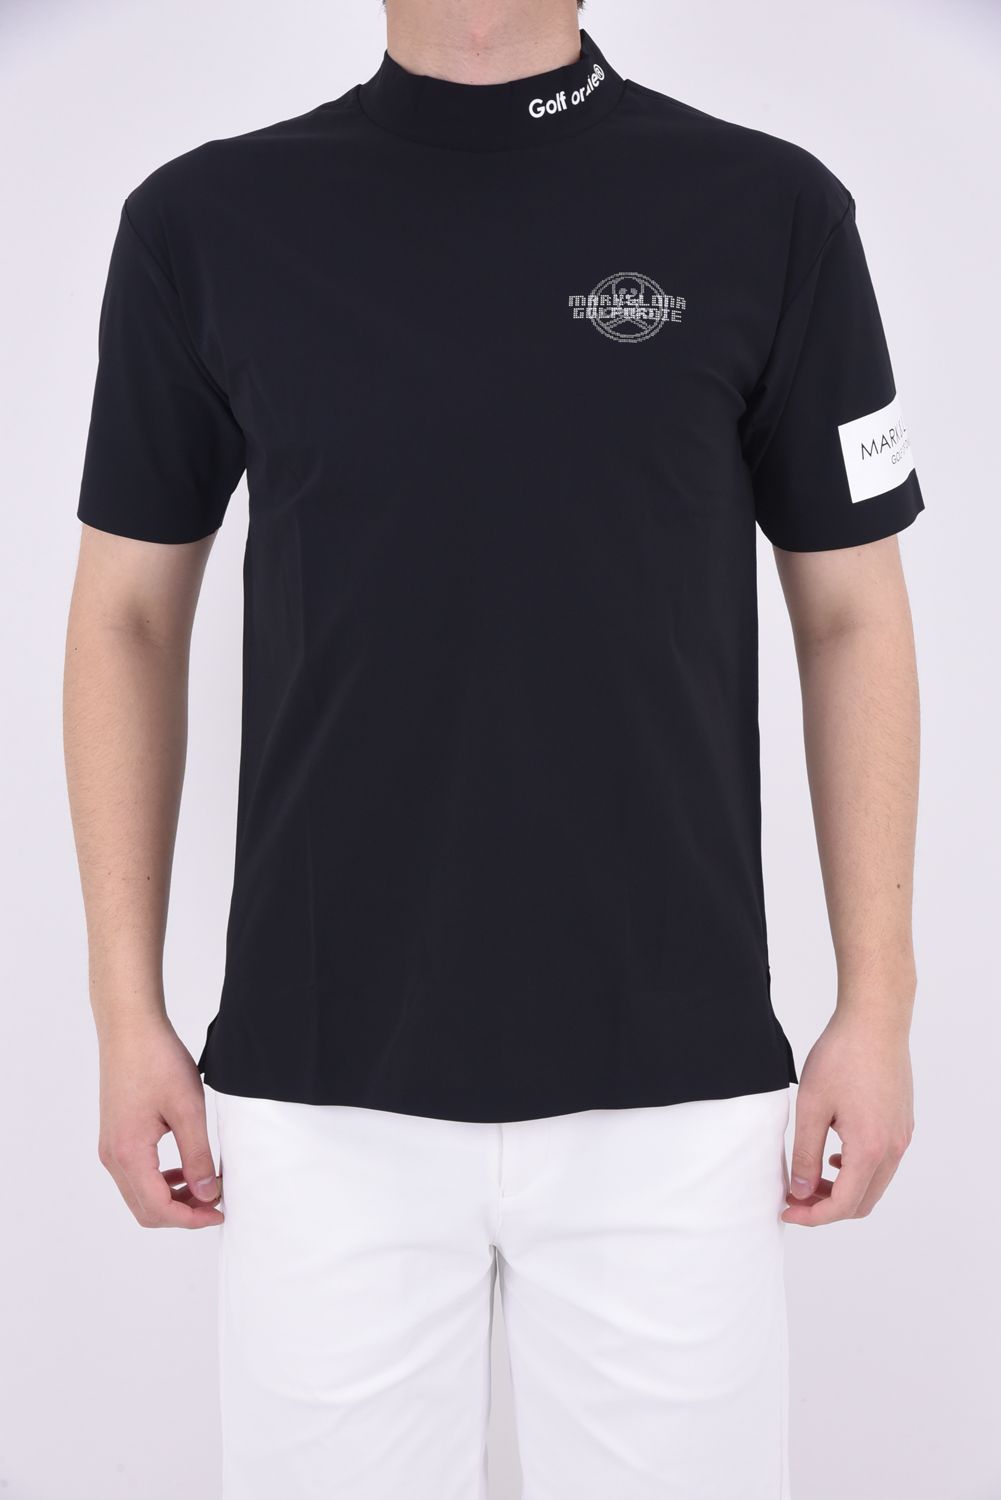 新作 MARK&LONA モックネックTシャツ BLACK Lサイズ 新品-